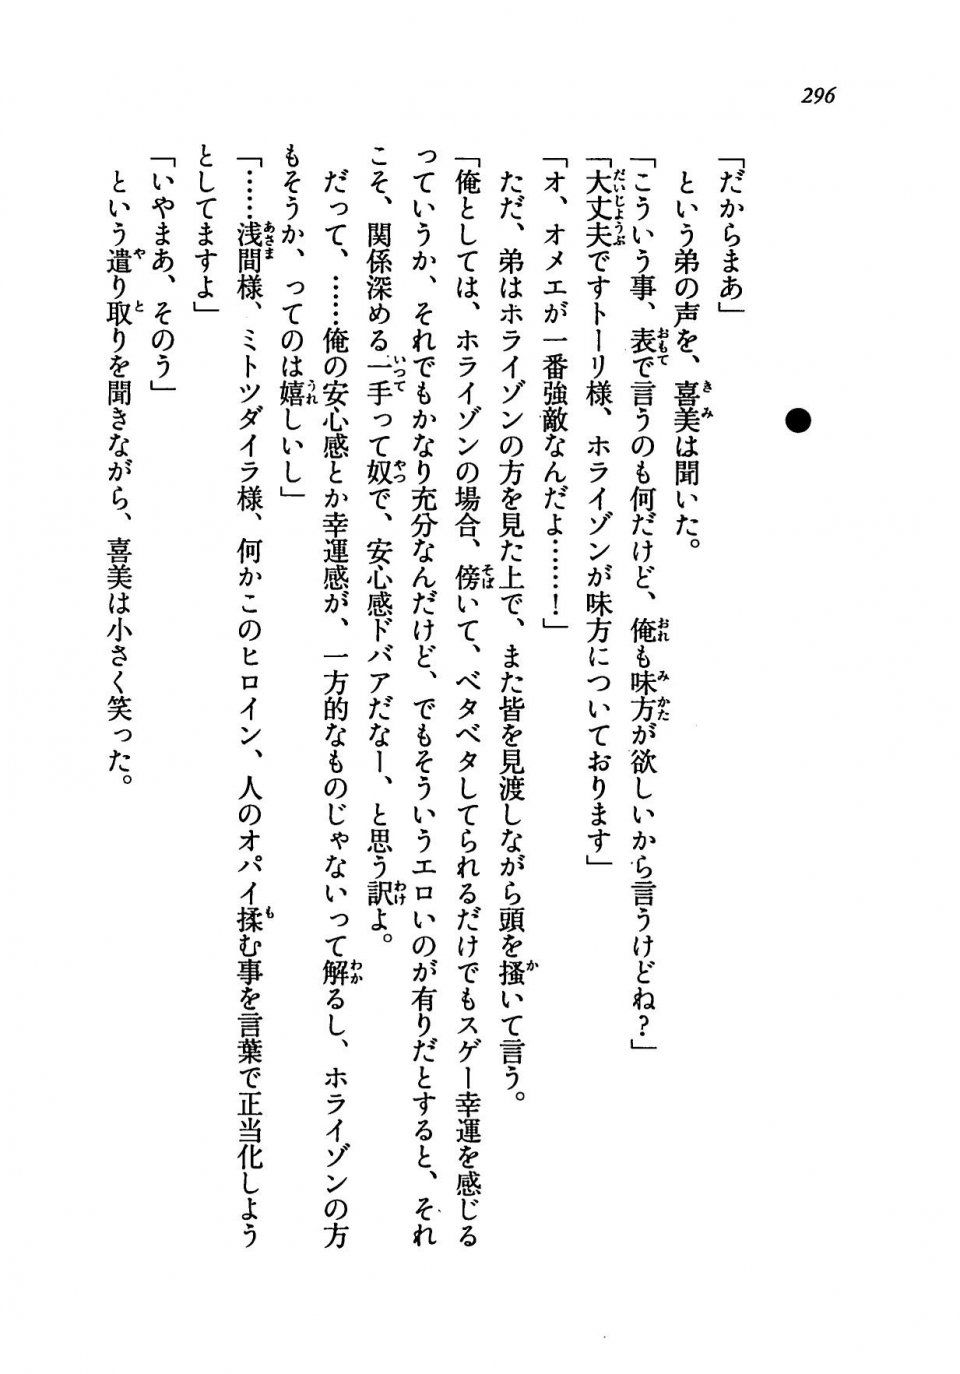 Kyoukai Senjou no Horizon LN Vol 19(8A) - Photo #296